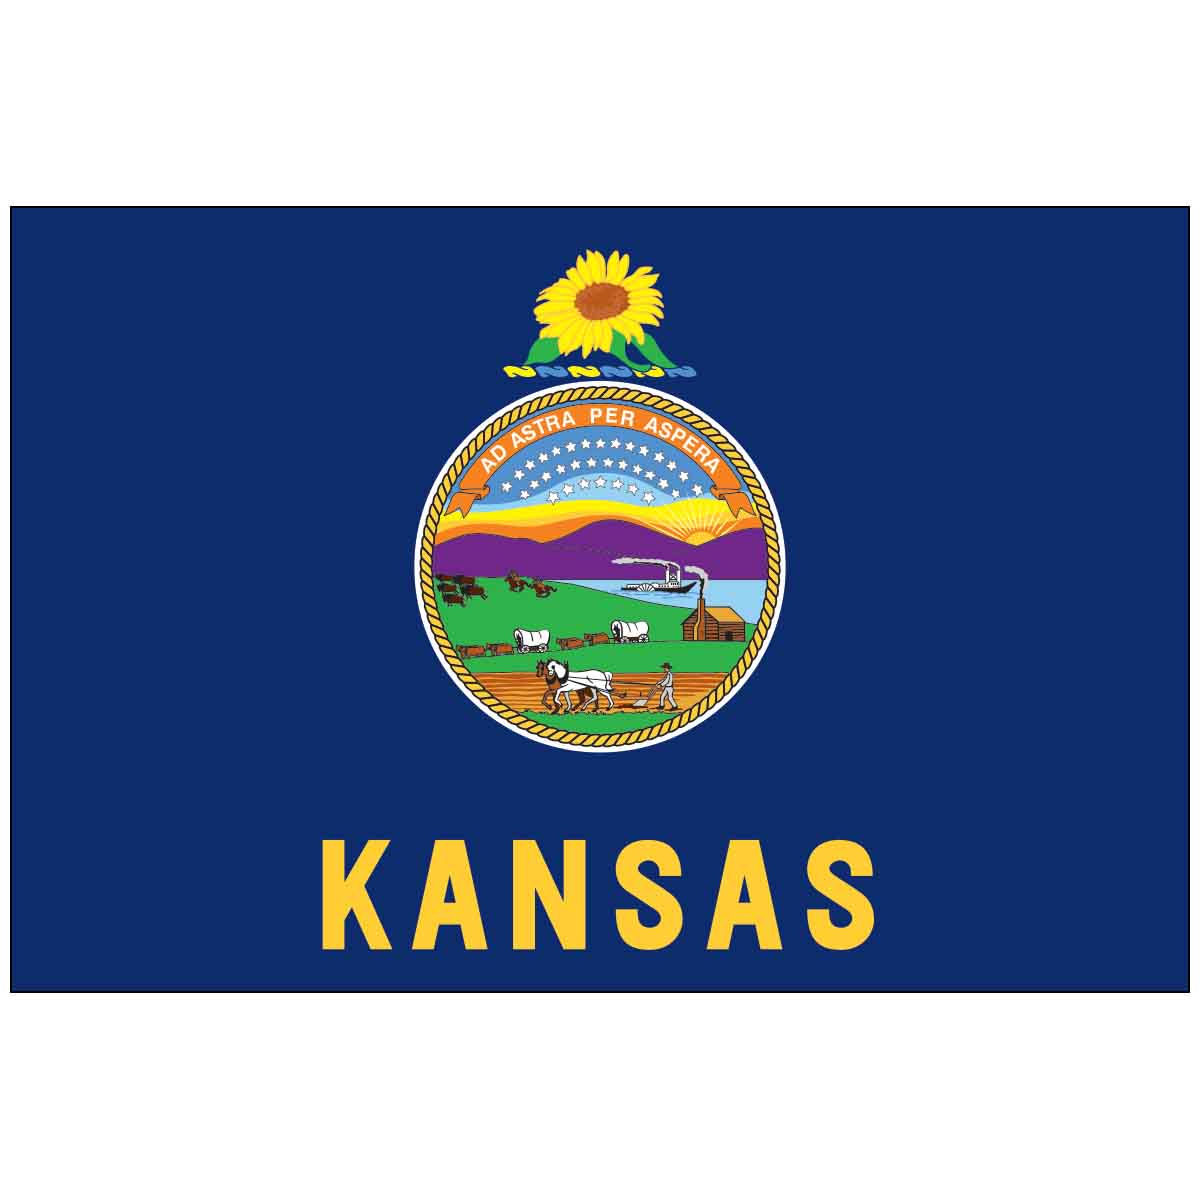 Kansas 4" x 6" Mounted State Flag